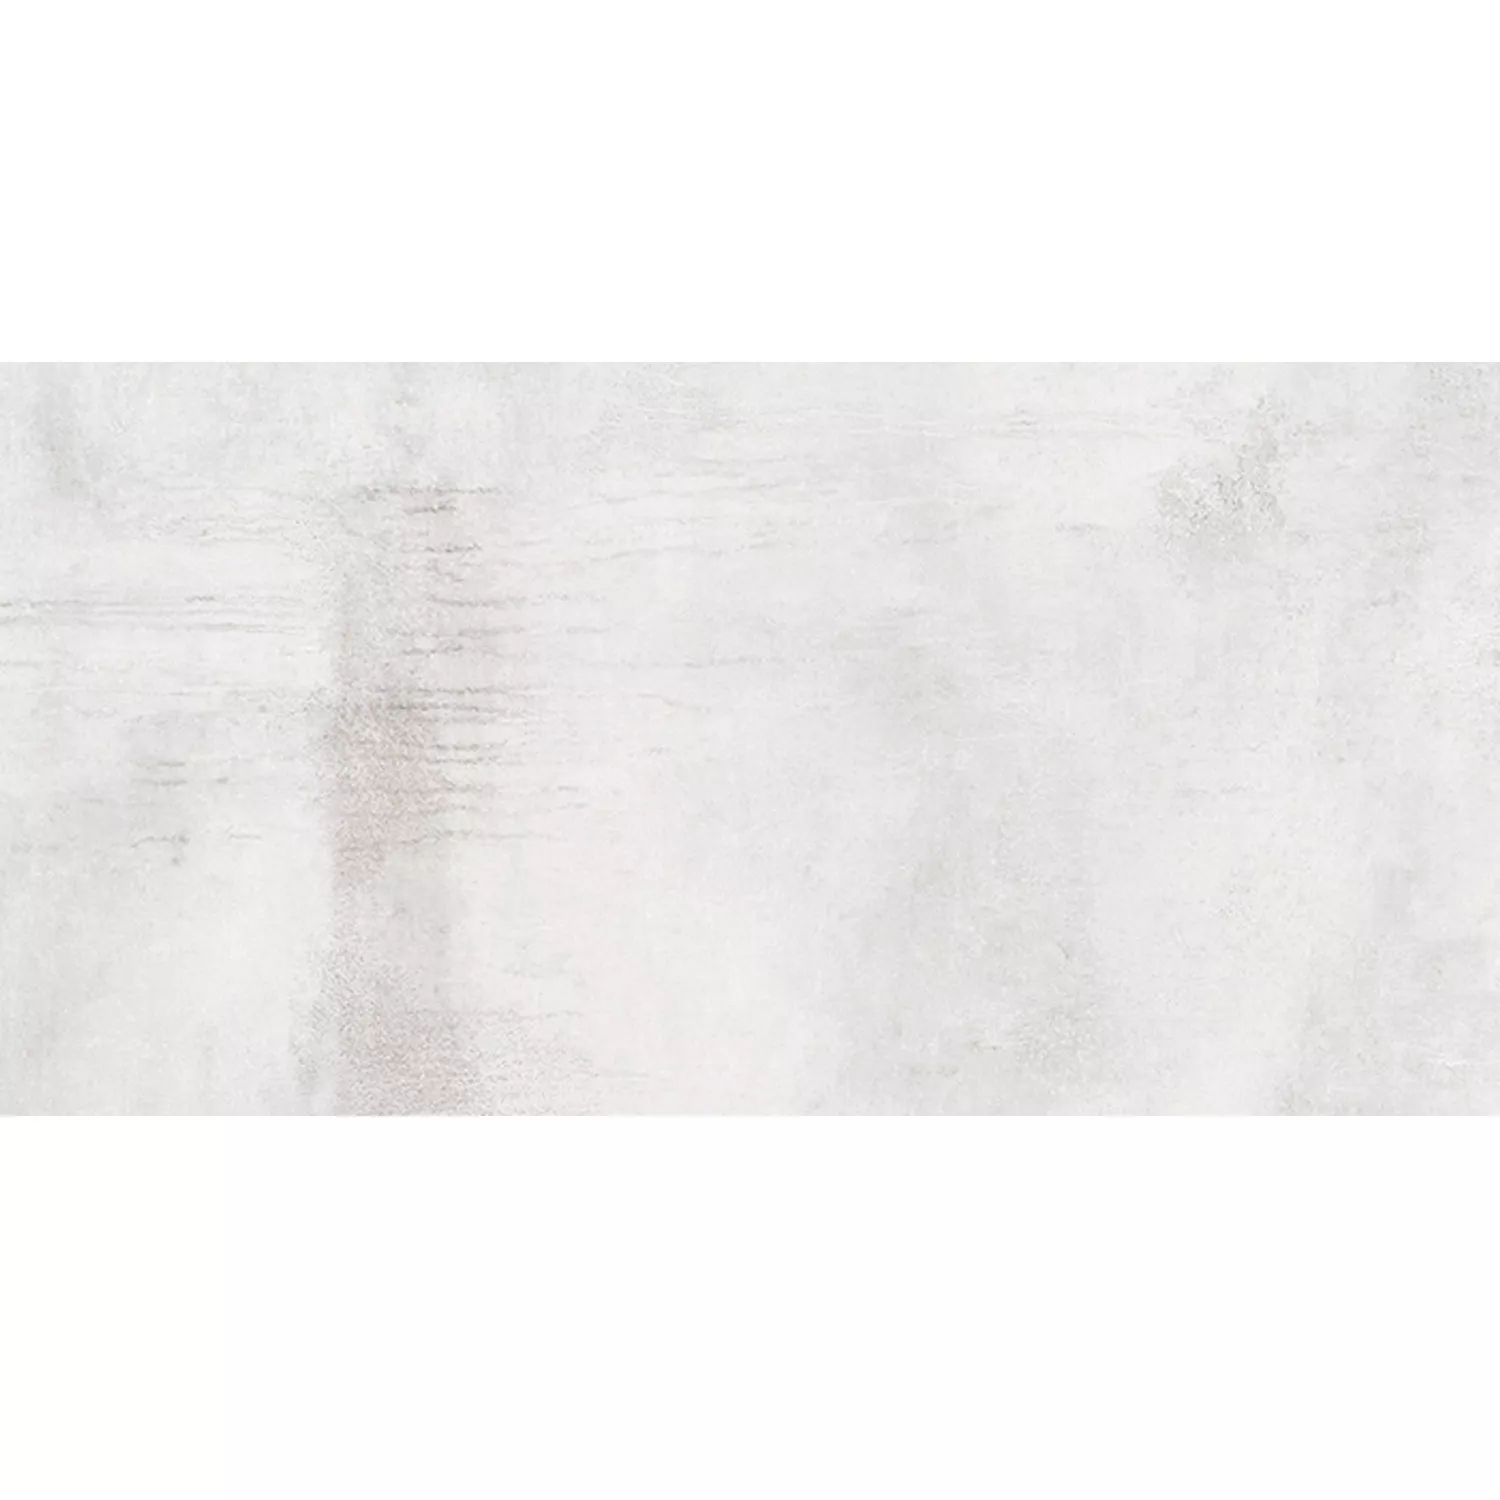 Πλακάκια Δαπέδου Tycoon Συγκεκριμένη Εμφάνιση R10 Ασήμι 30x60cm